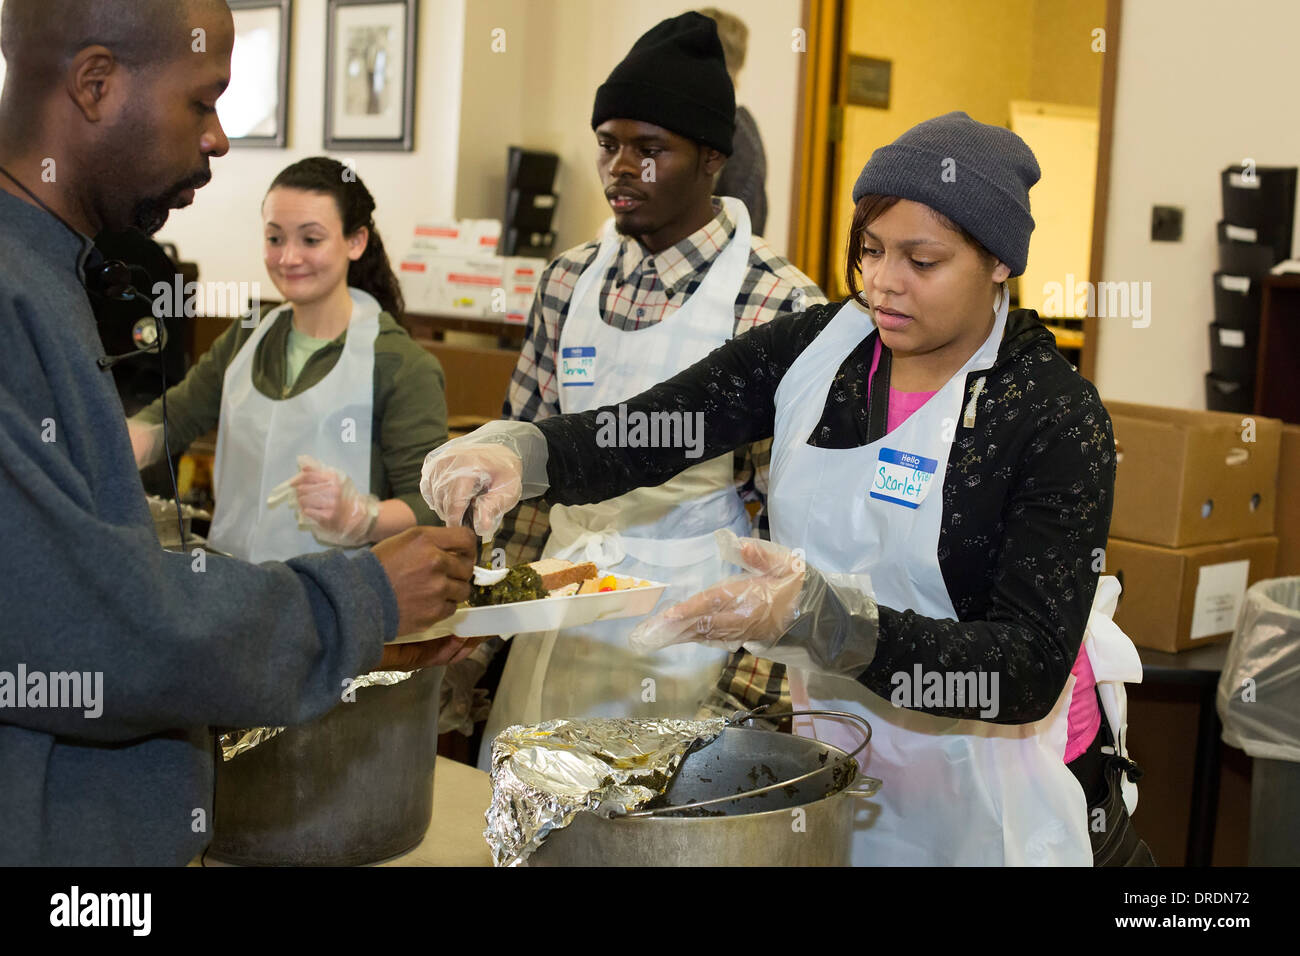 Detroit, Michigan - Voluntarios sirven una comida a las personas sin hogar e individuos de bajos ingresos Foto de stock